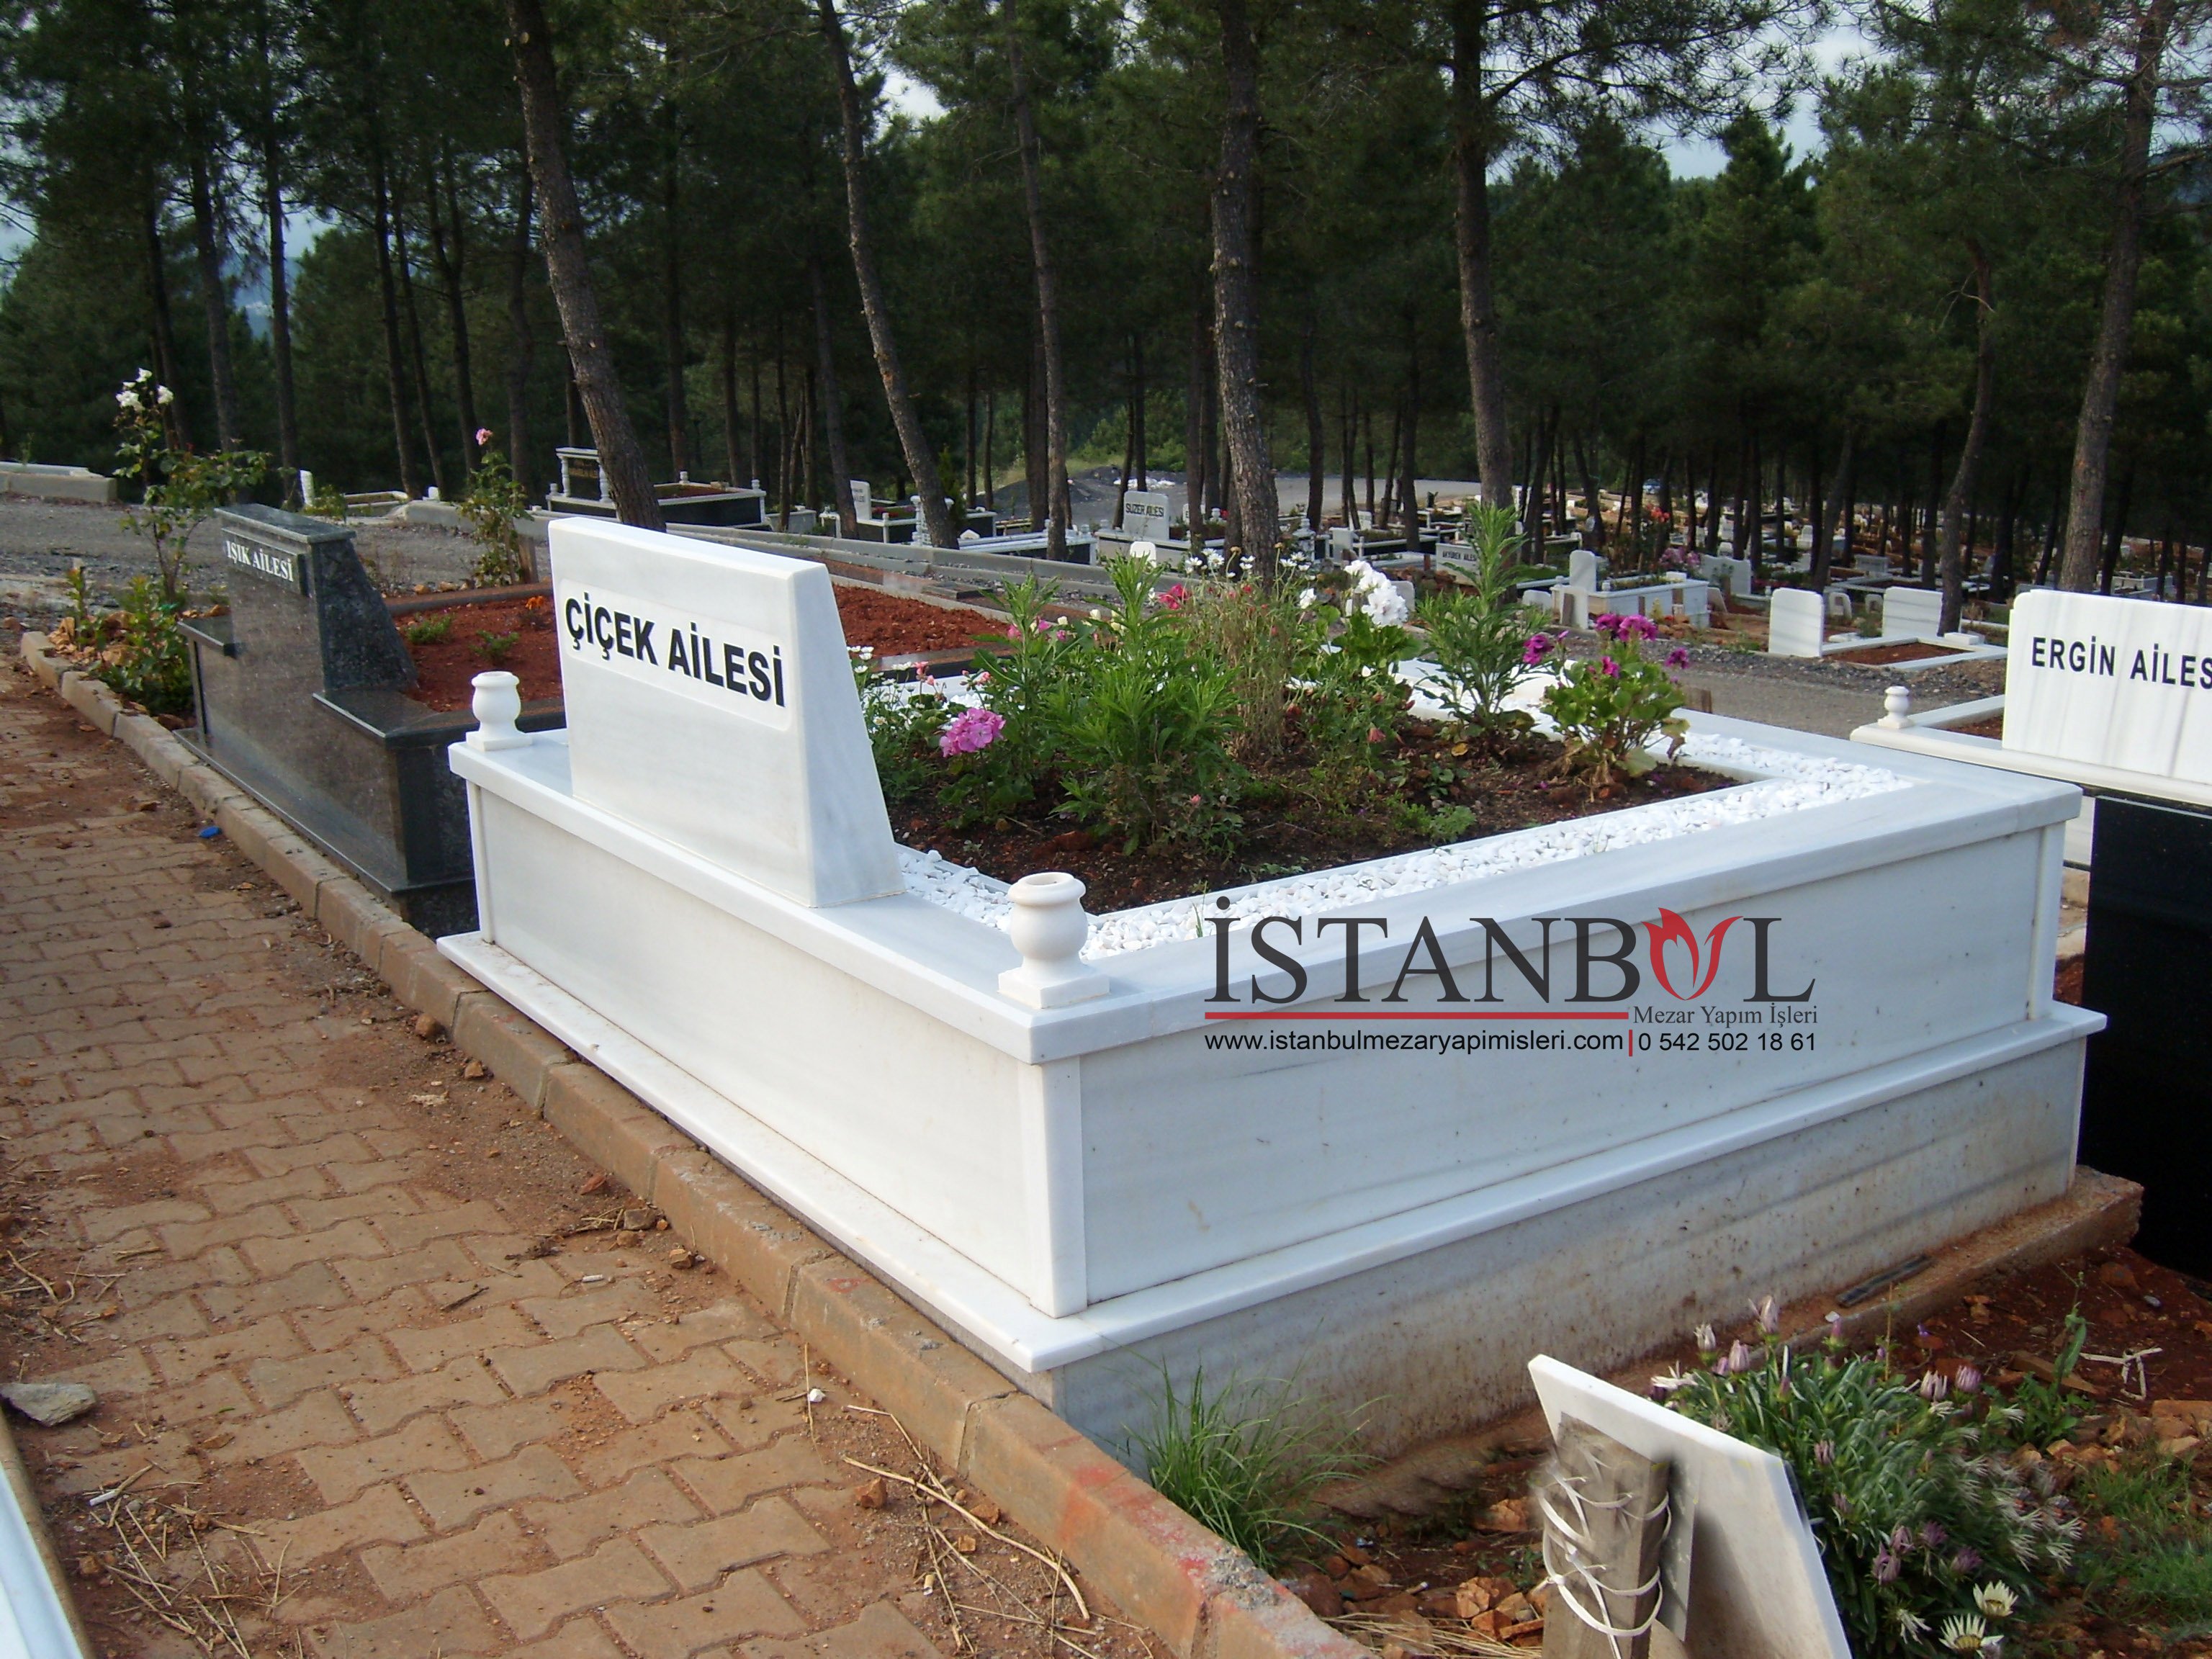 İstanbul Mezar Yapım İşleri